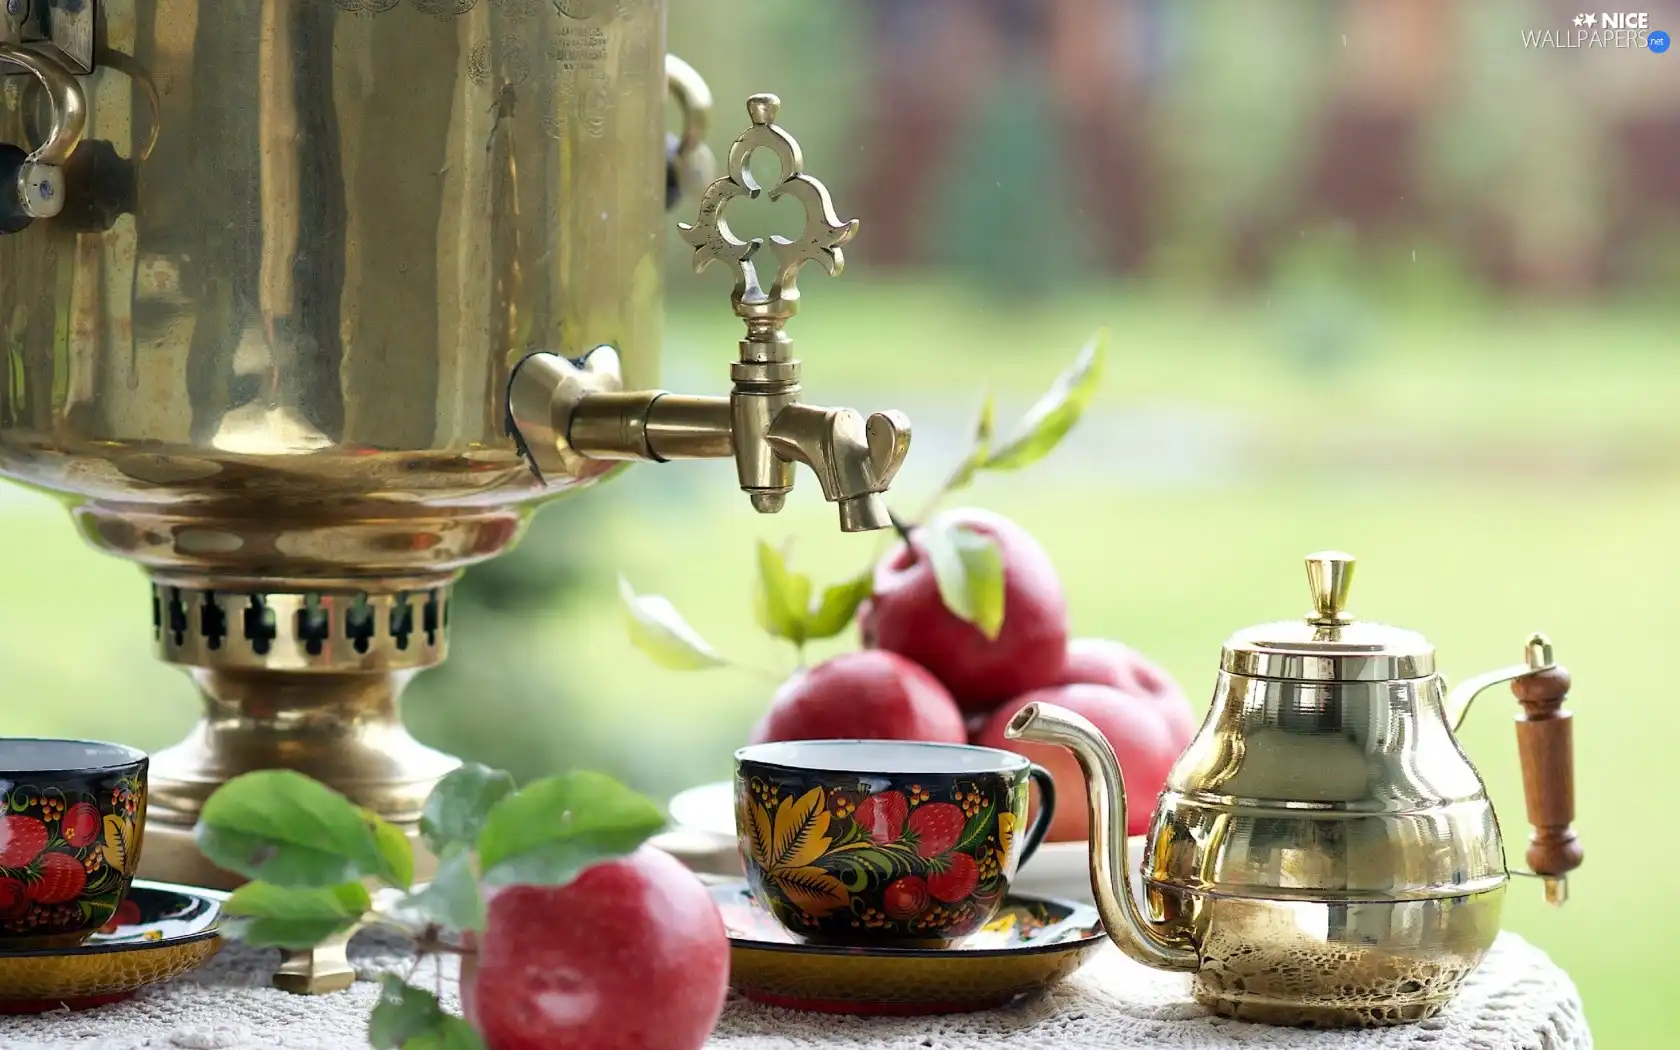 samovar, apples, cups, tea